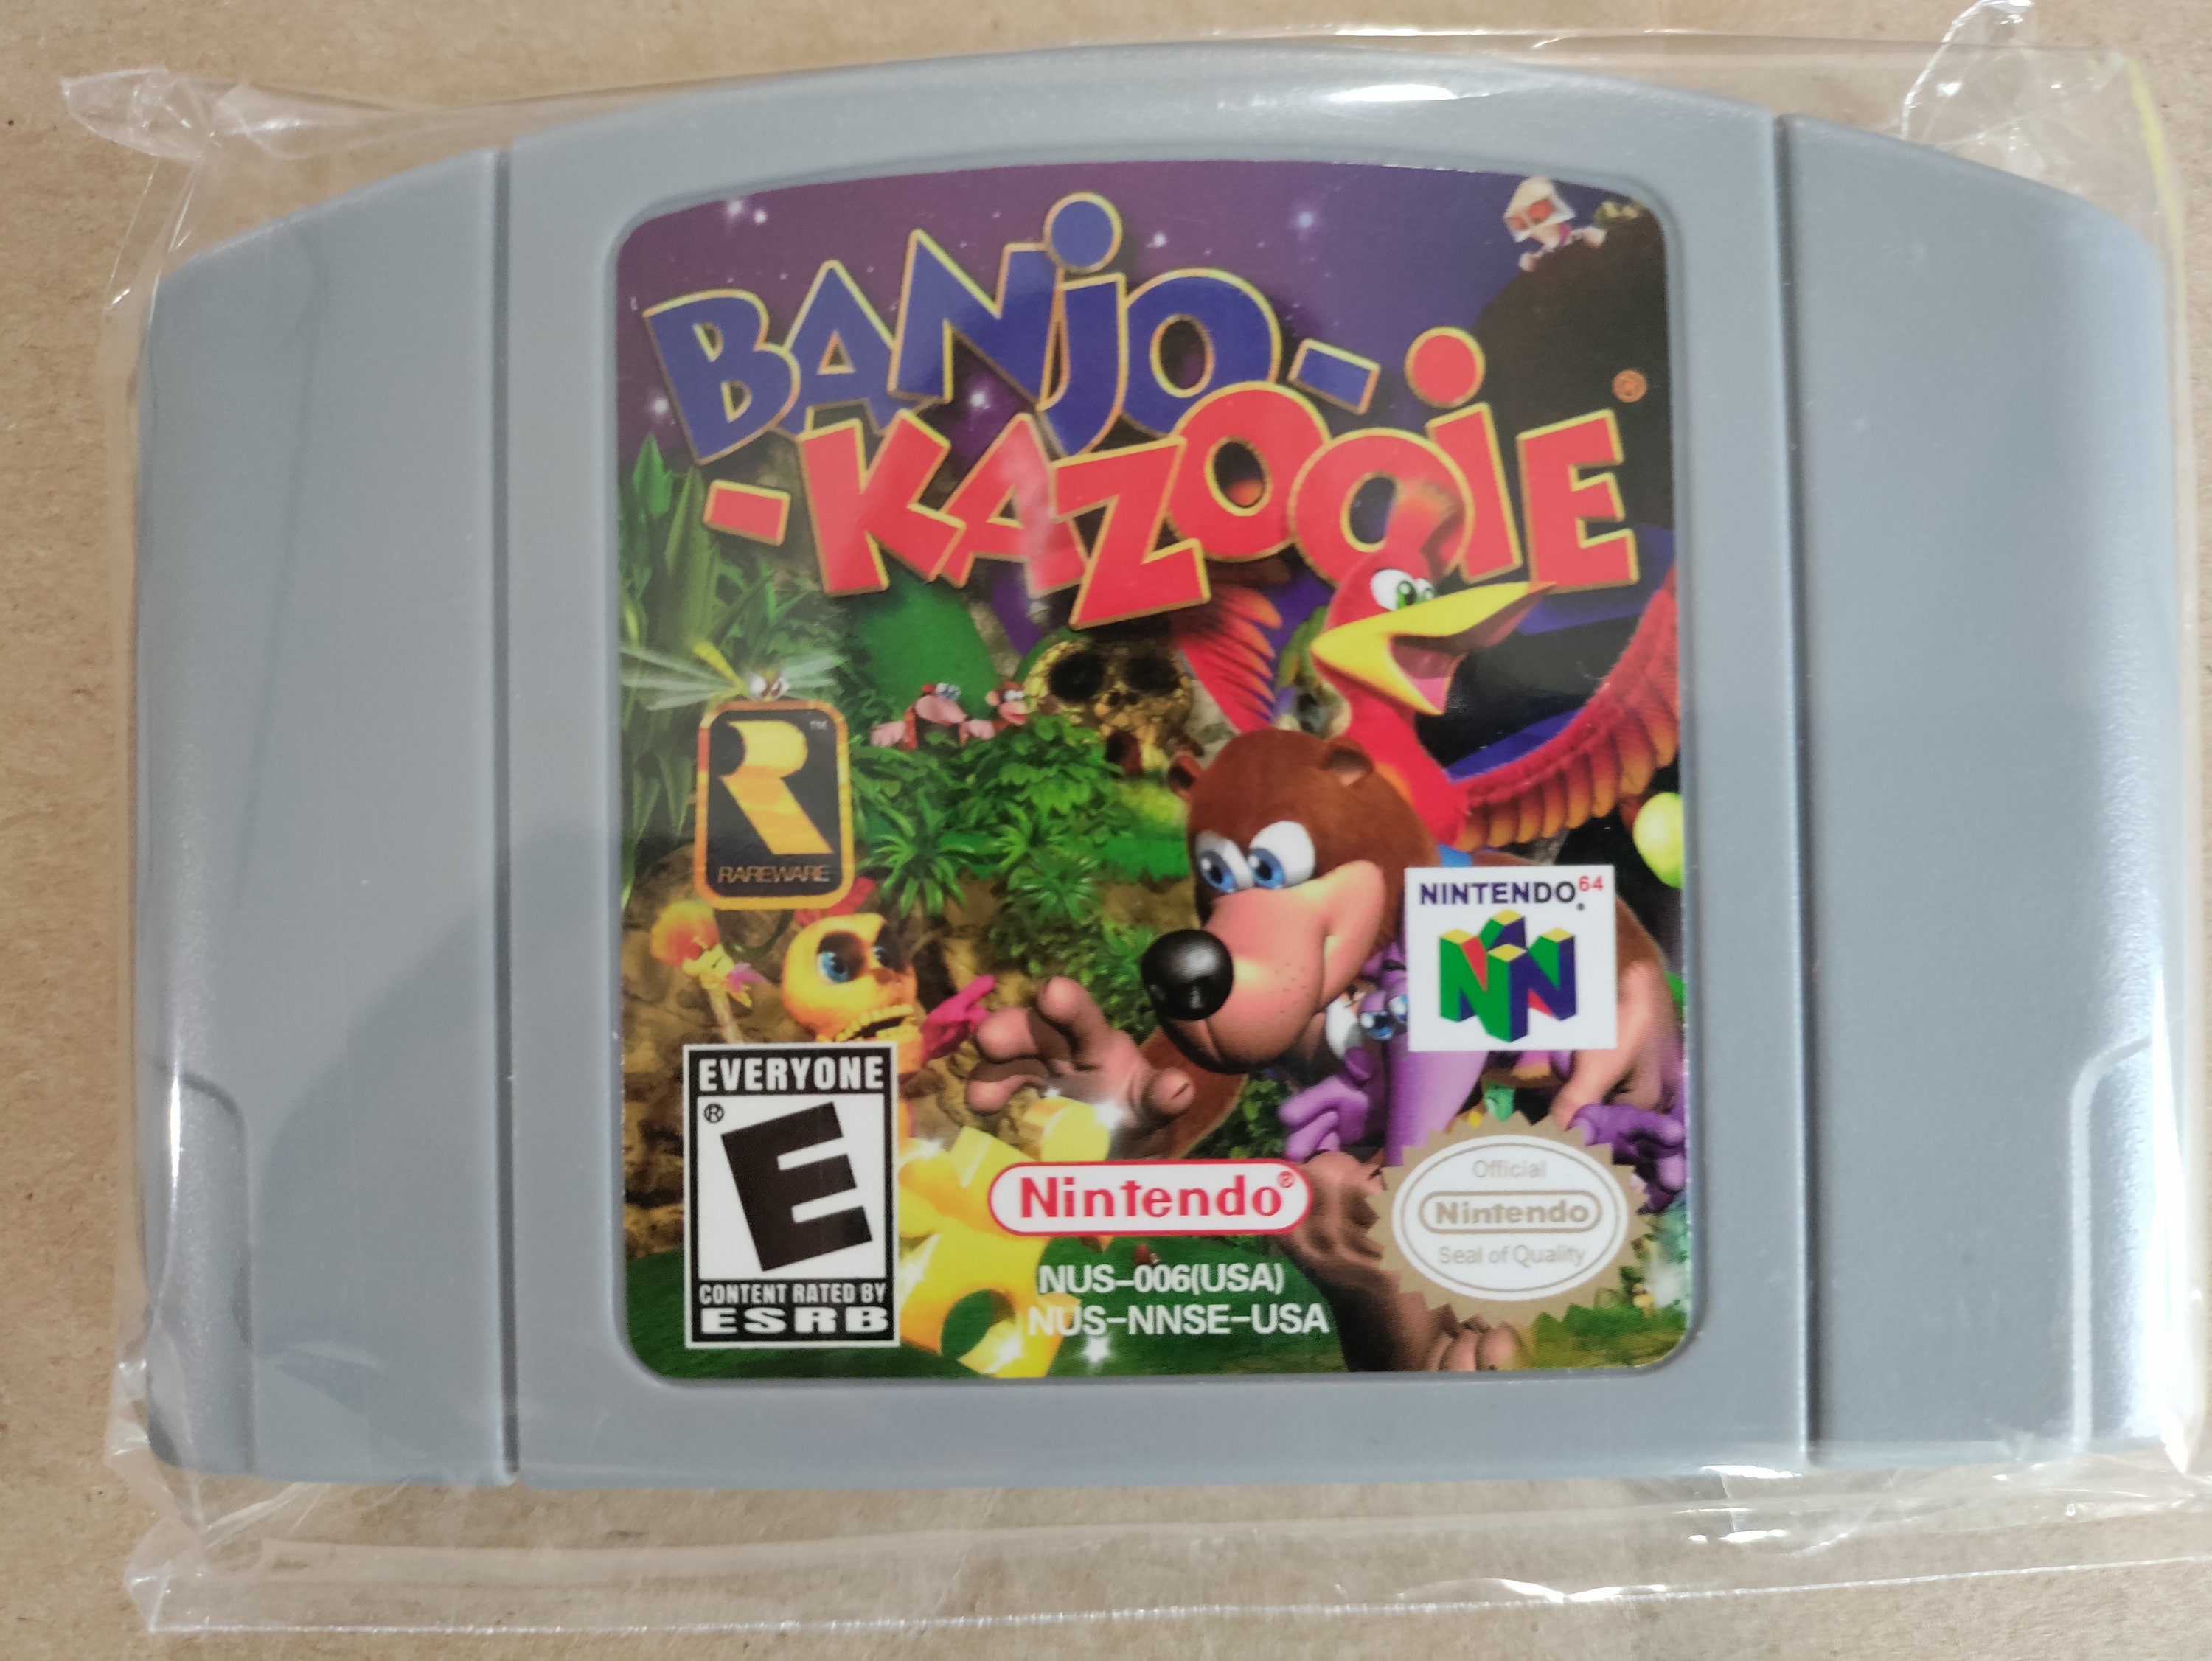 Banjo-Kazooie [USA] - Nintendo 64 (N64) rom download